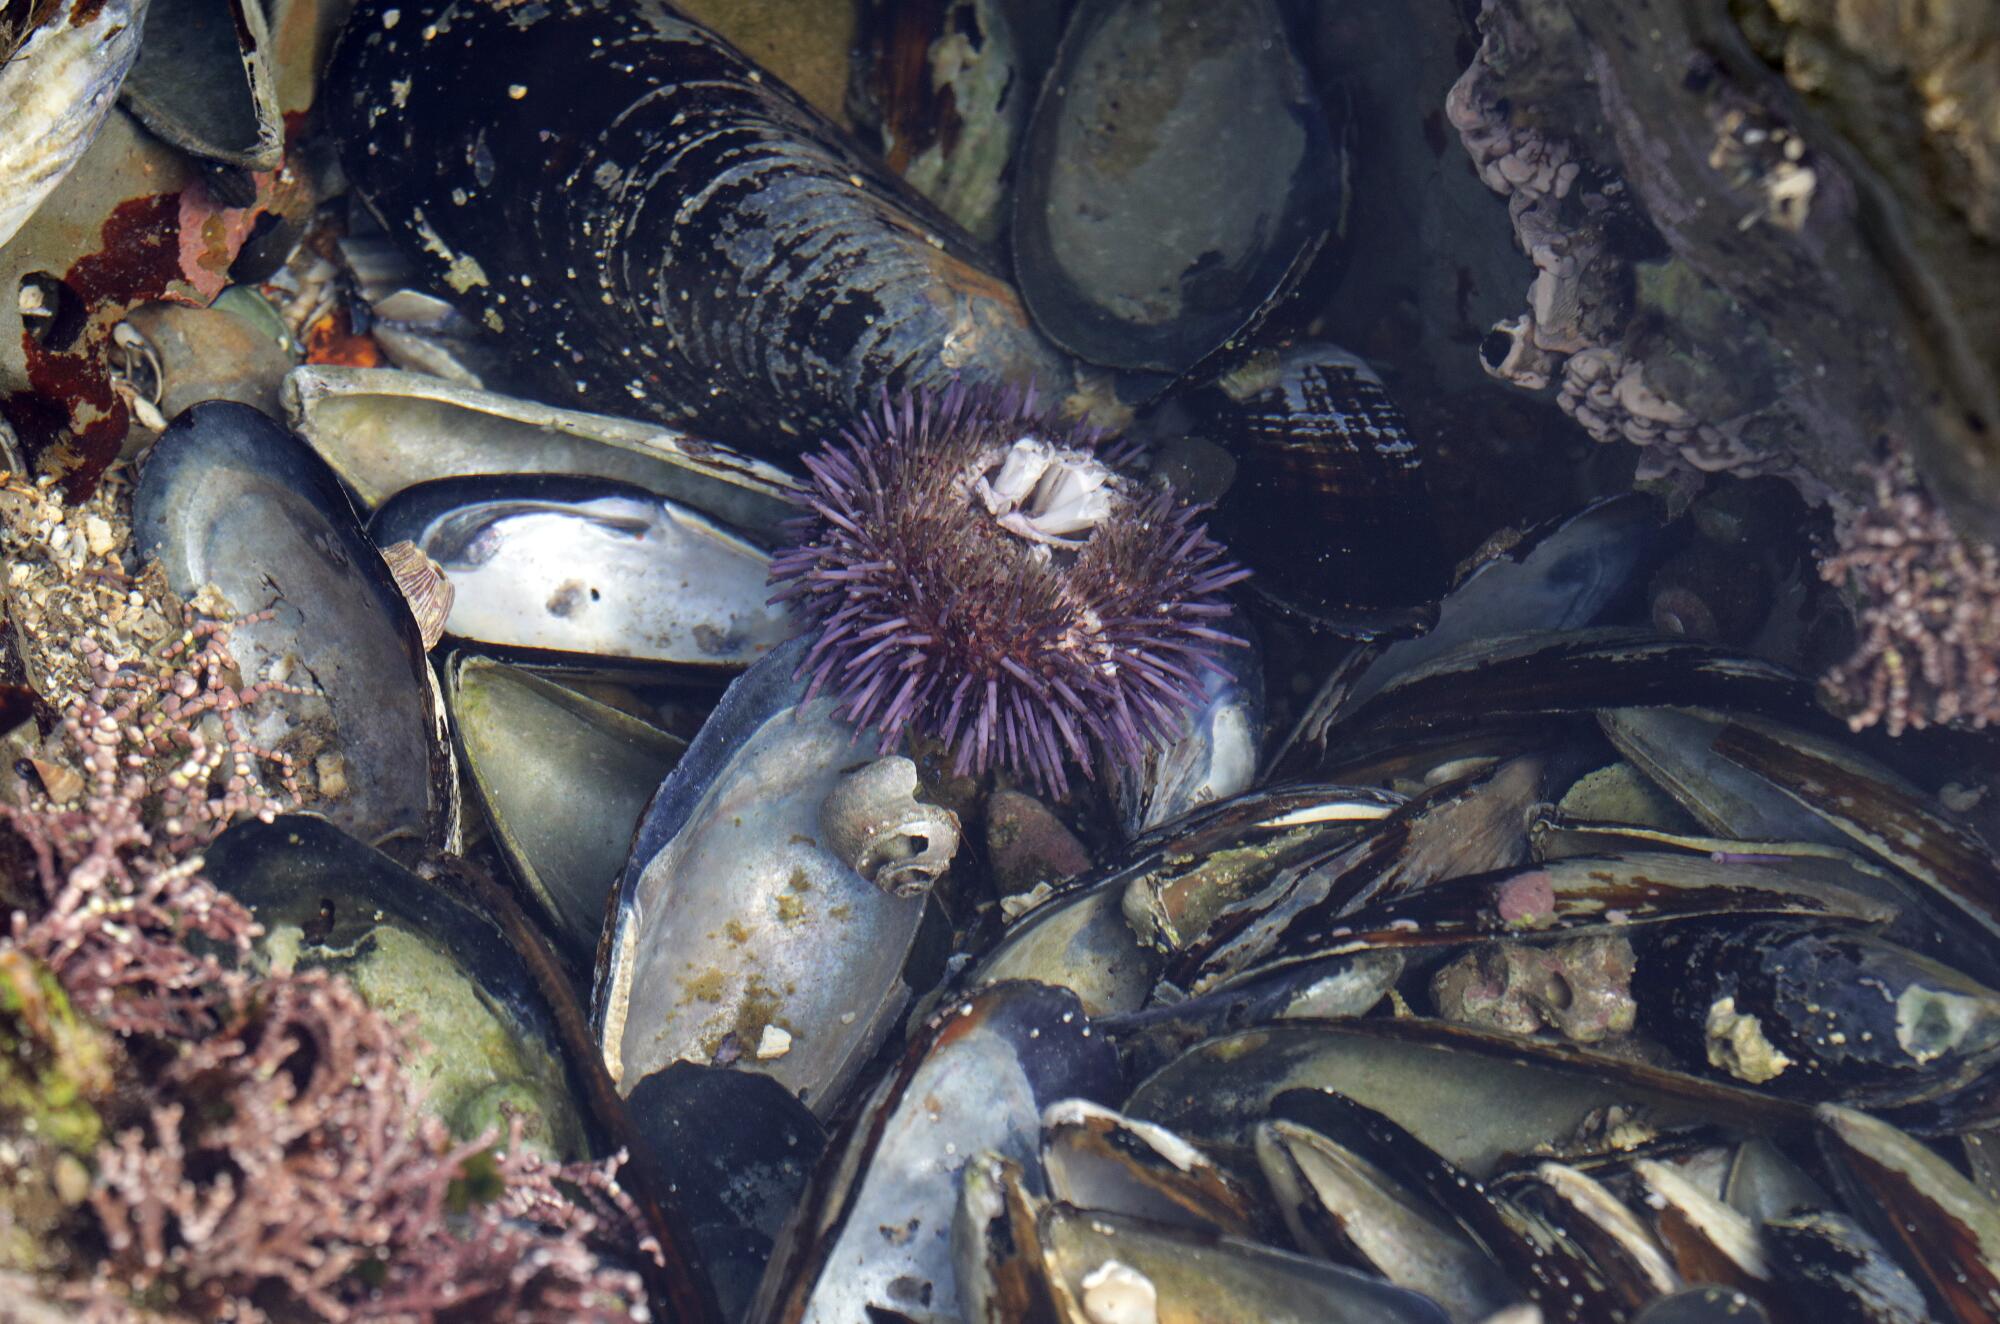 A sea urchin grows in a tide pool.